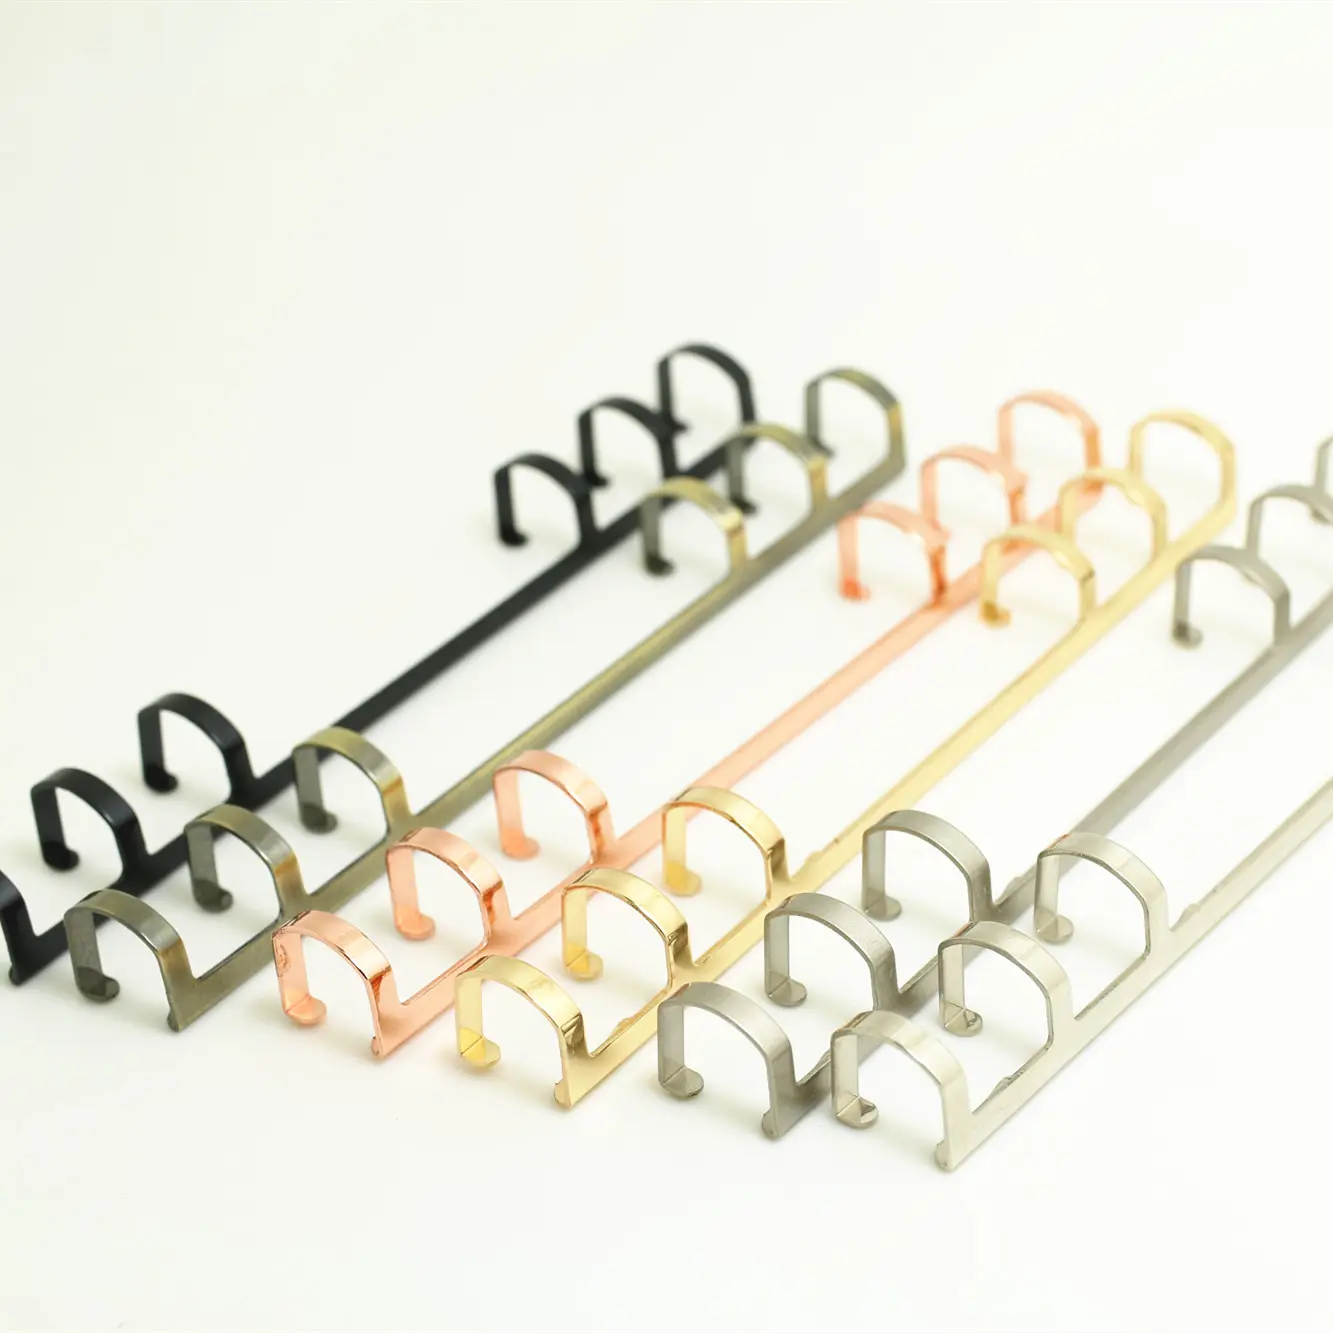 Angepasst verschiedenen farben 6 ringe binder clip mit kunststoff track (ziehen offen)